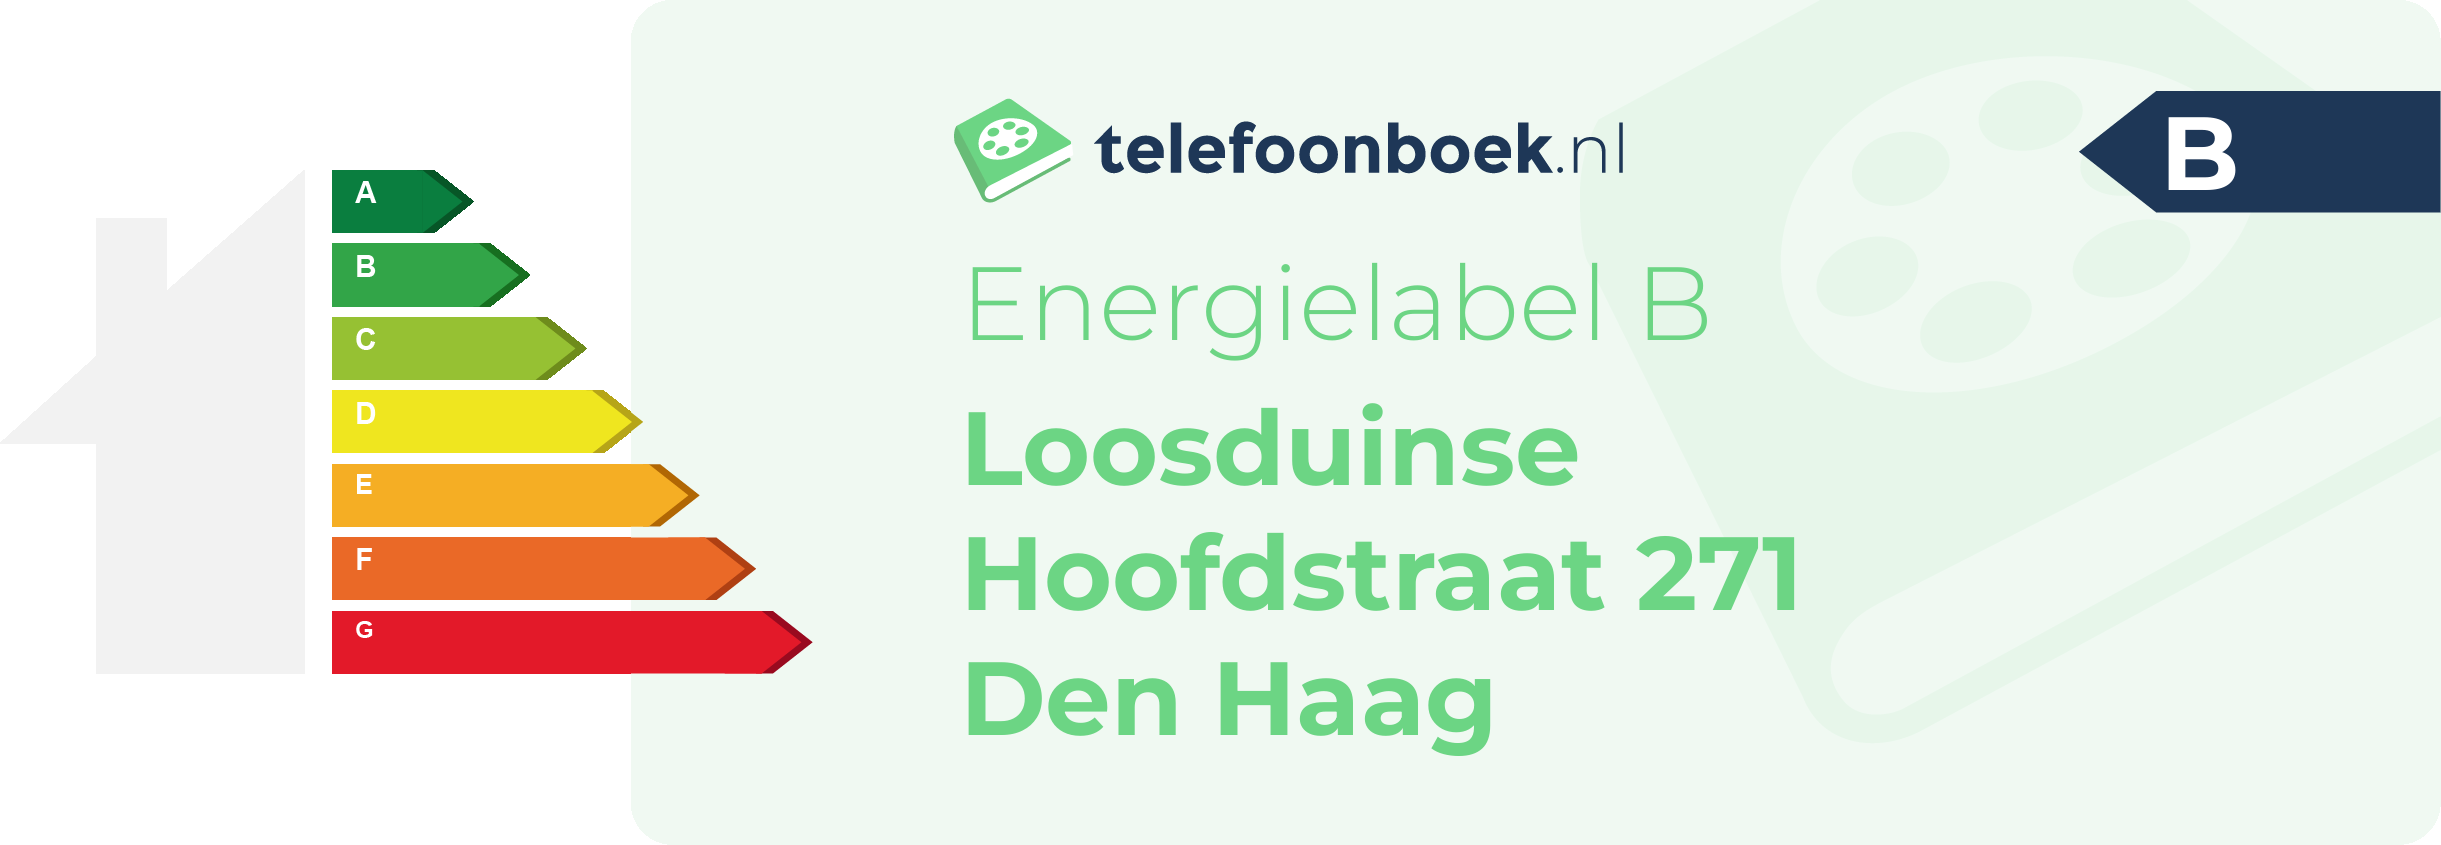 Energielabel Loosduinse Hoofdstraat 271 Den Haag